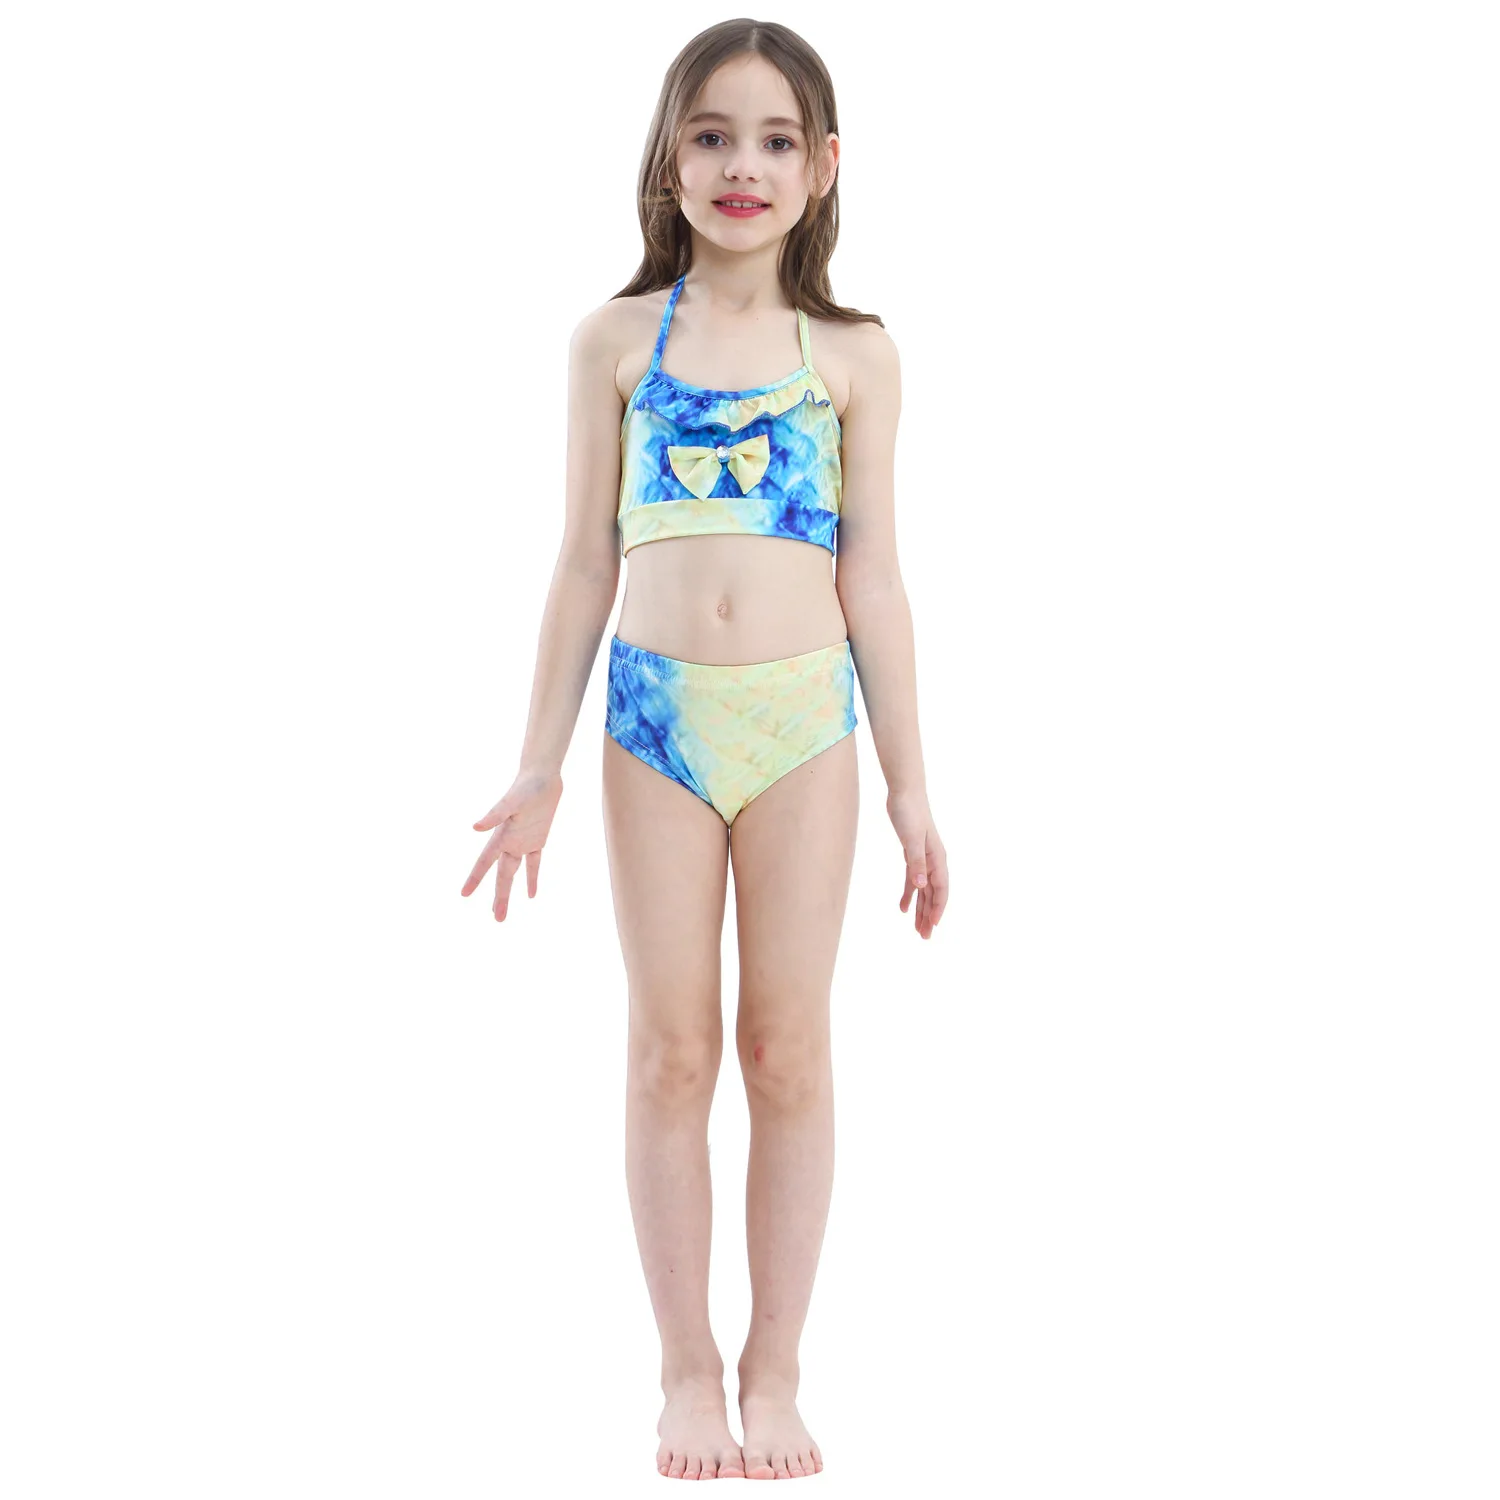 Детский купальный костюм русалки, купальный костюм русалки, платье русалки, купальный костюм, бикини